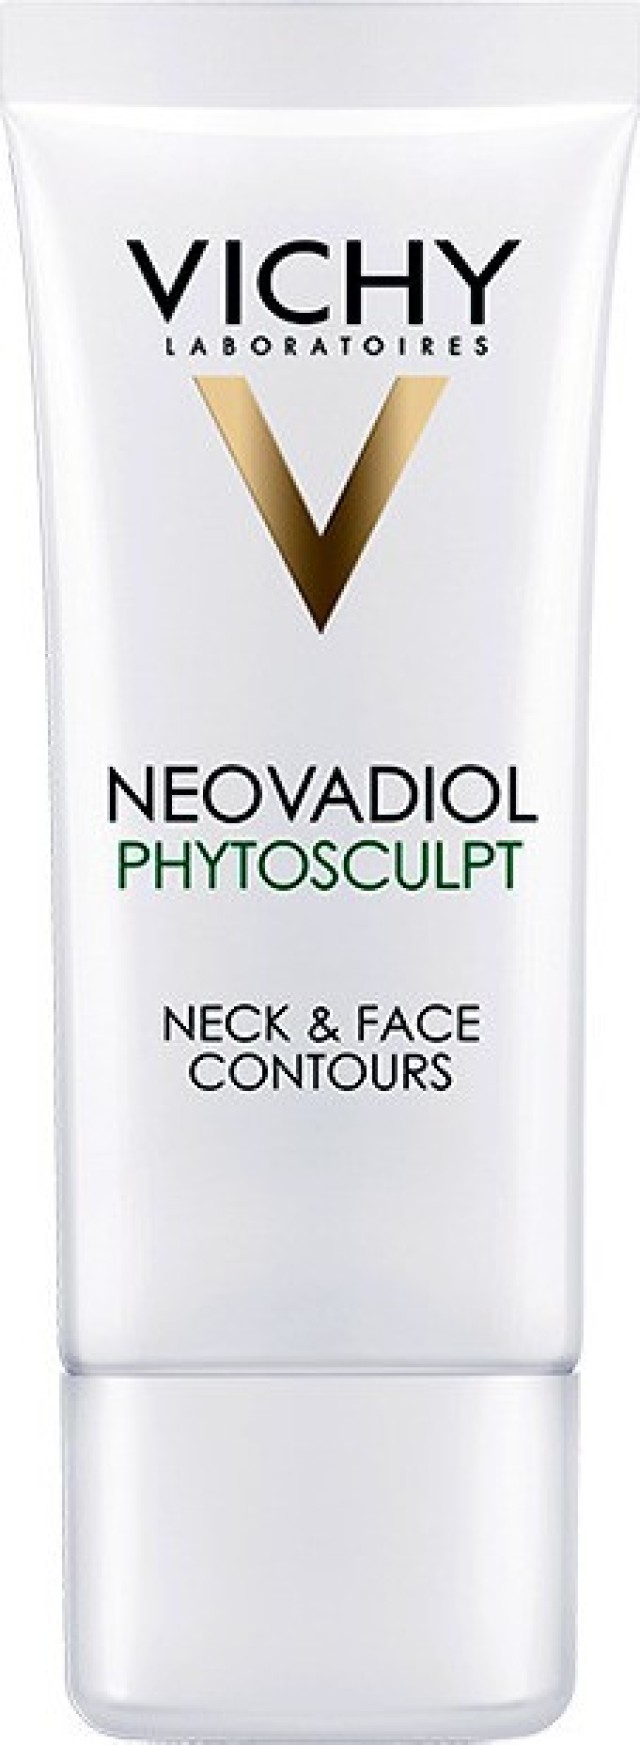 Vichy Neovadiol Phytosculpt Κρέμα Ημέρας για Λαιμό & Περίγραμμα Προσώπου 50ml